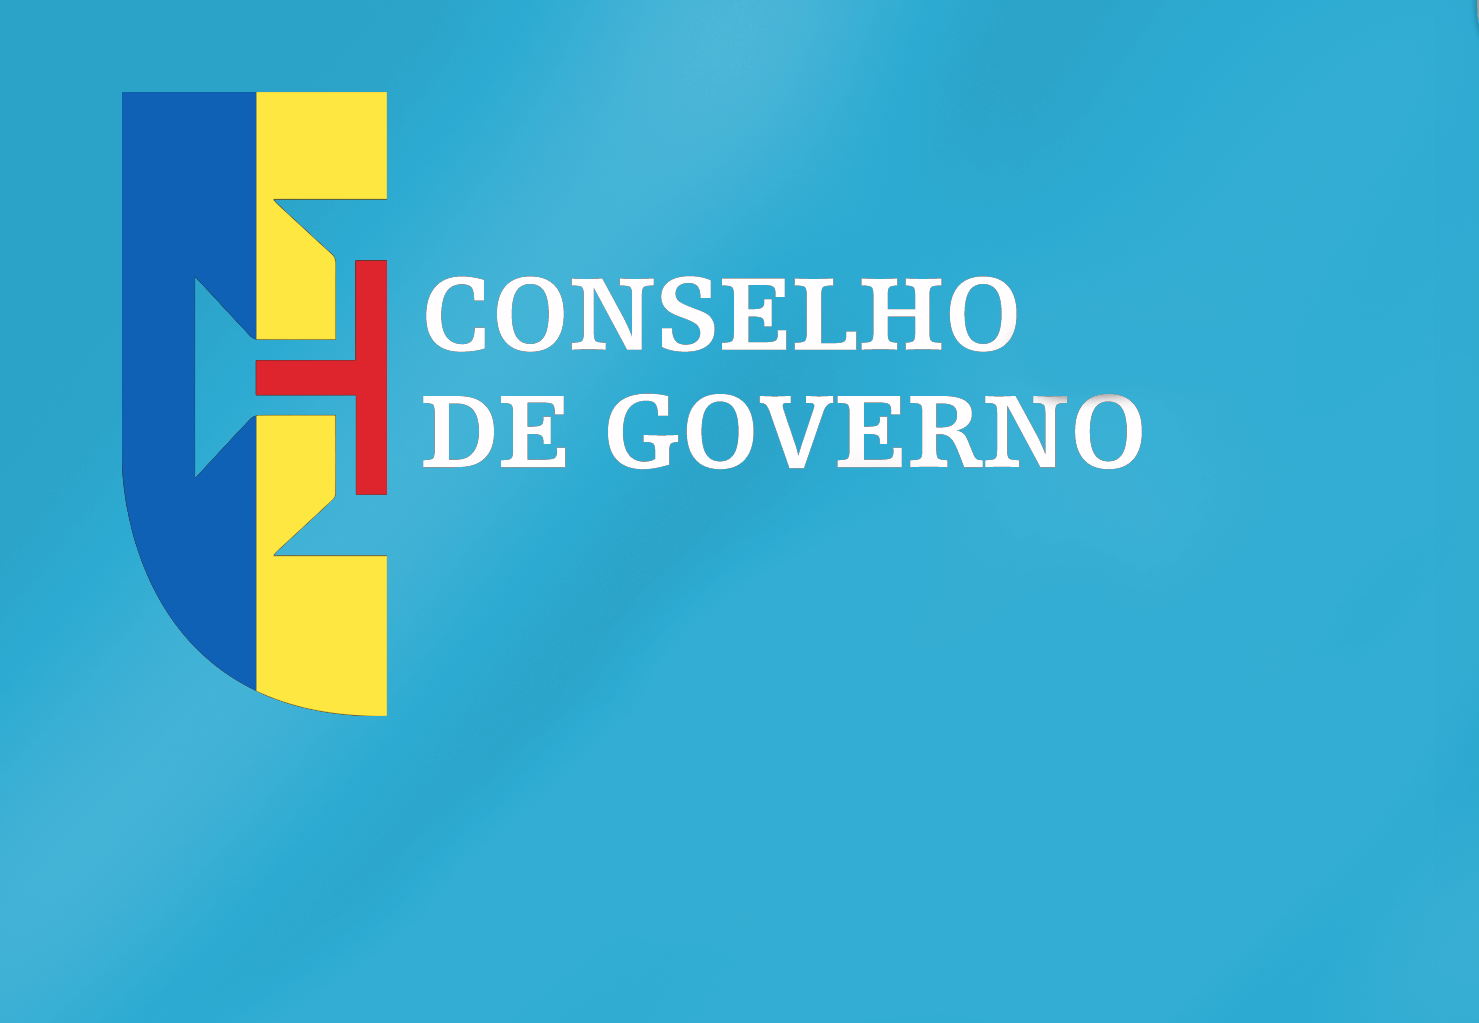 Conclusões Conselho de Governo - 08 de setembro de 2022